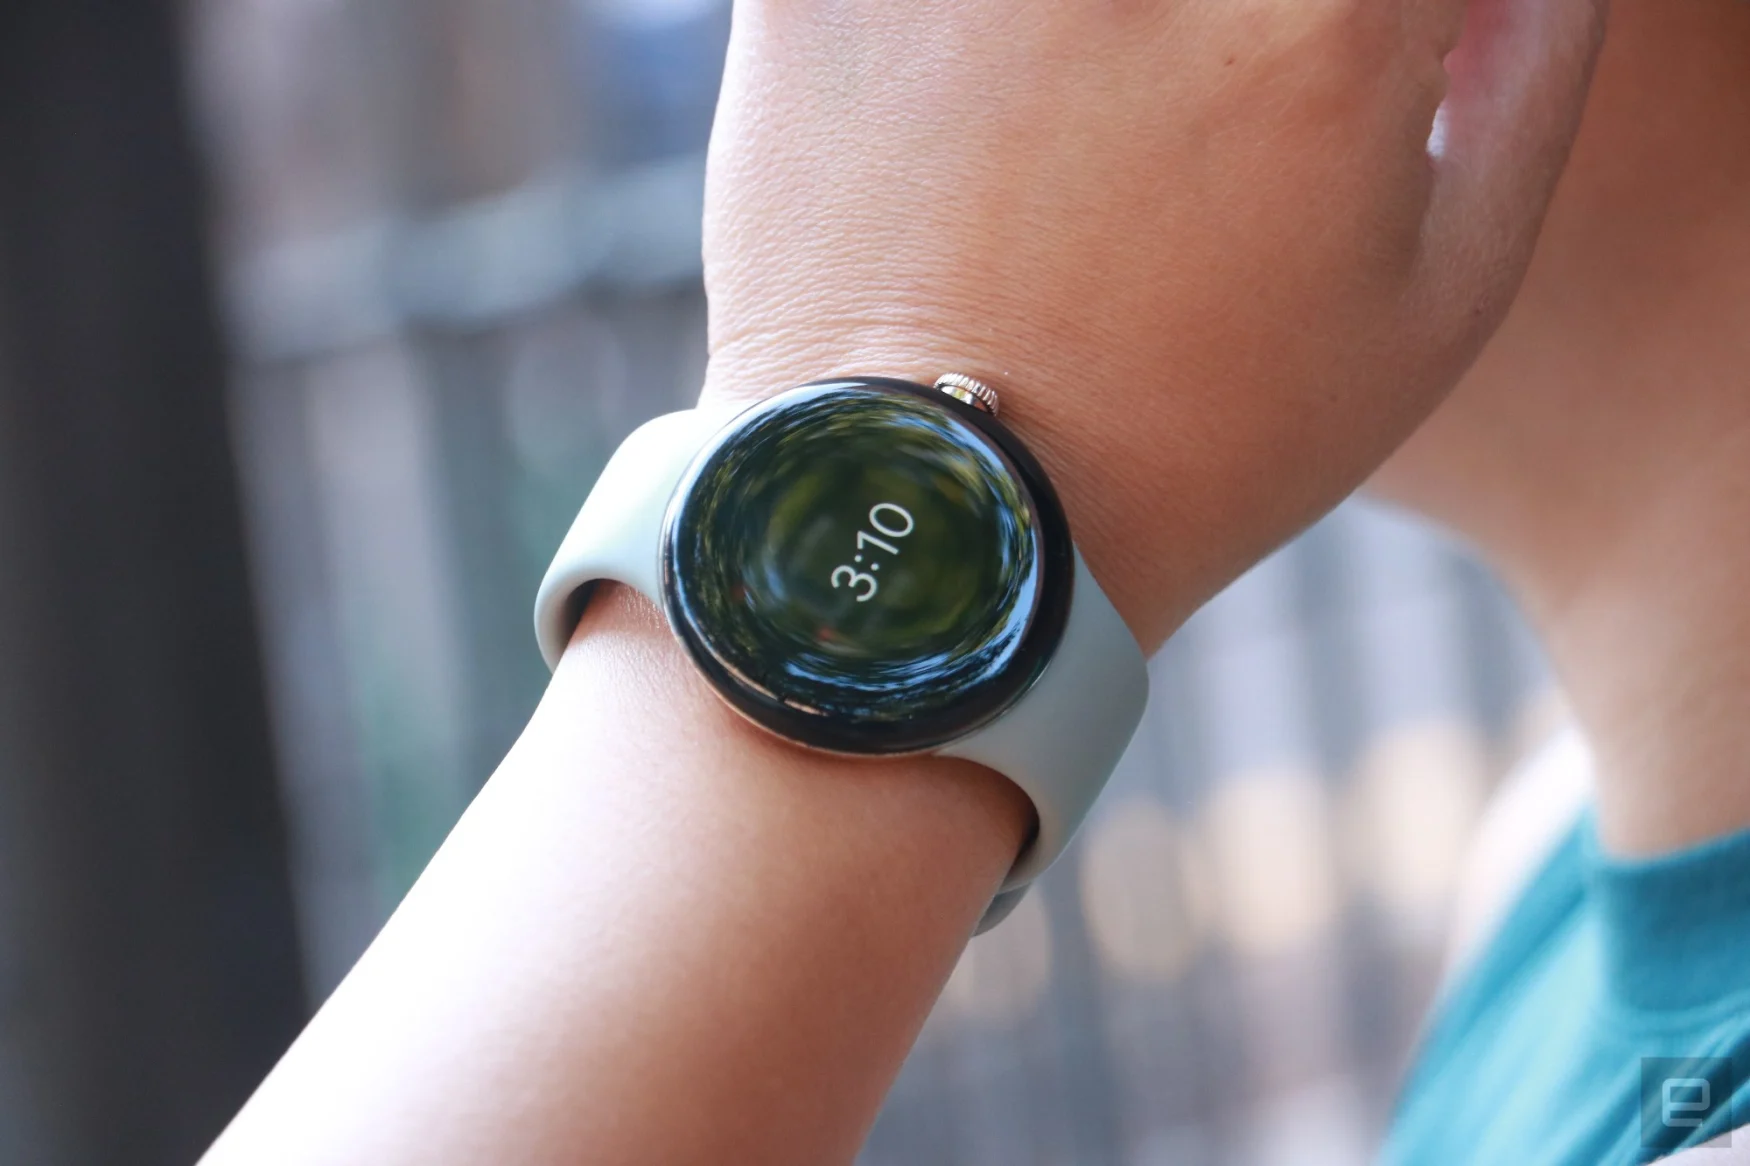 La Pixel Watch au poignet d'une personne, affichant l'heure sous forme d'affichage permanent.